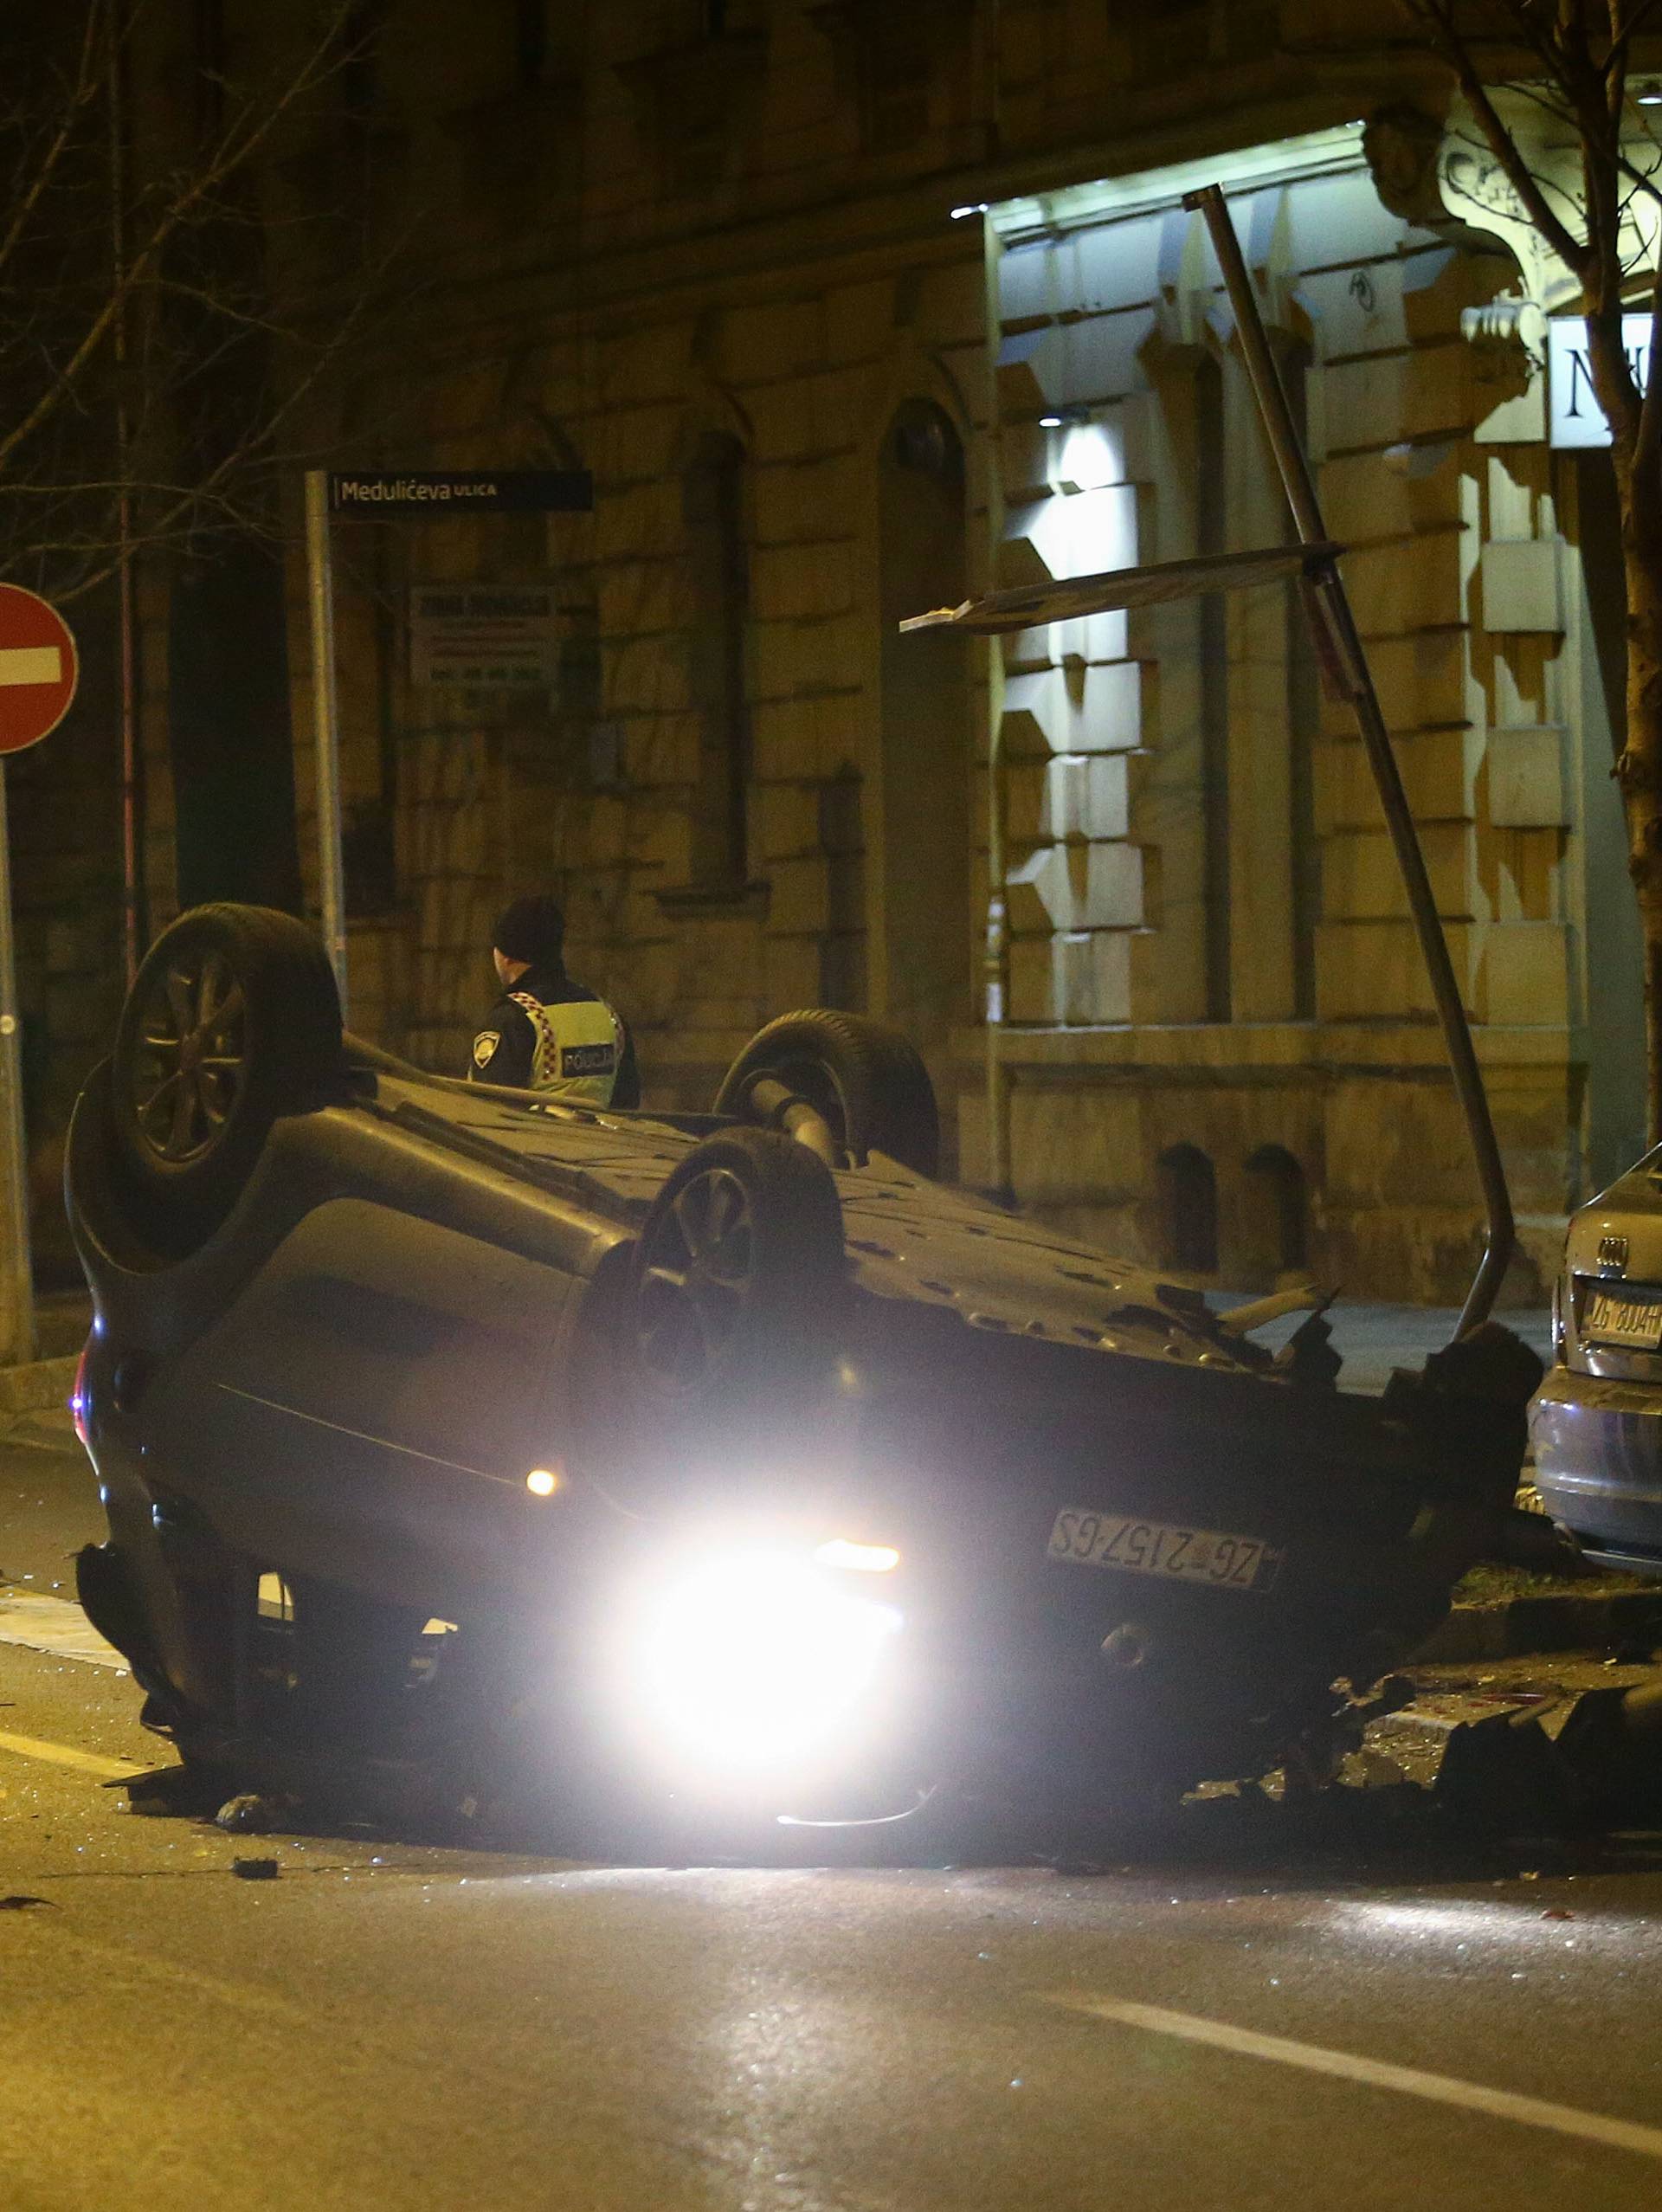 Užas u Zagrebu: Netko je ležao na cesti, semafor skroz uništen